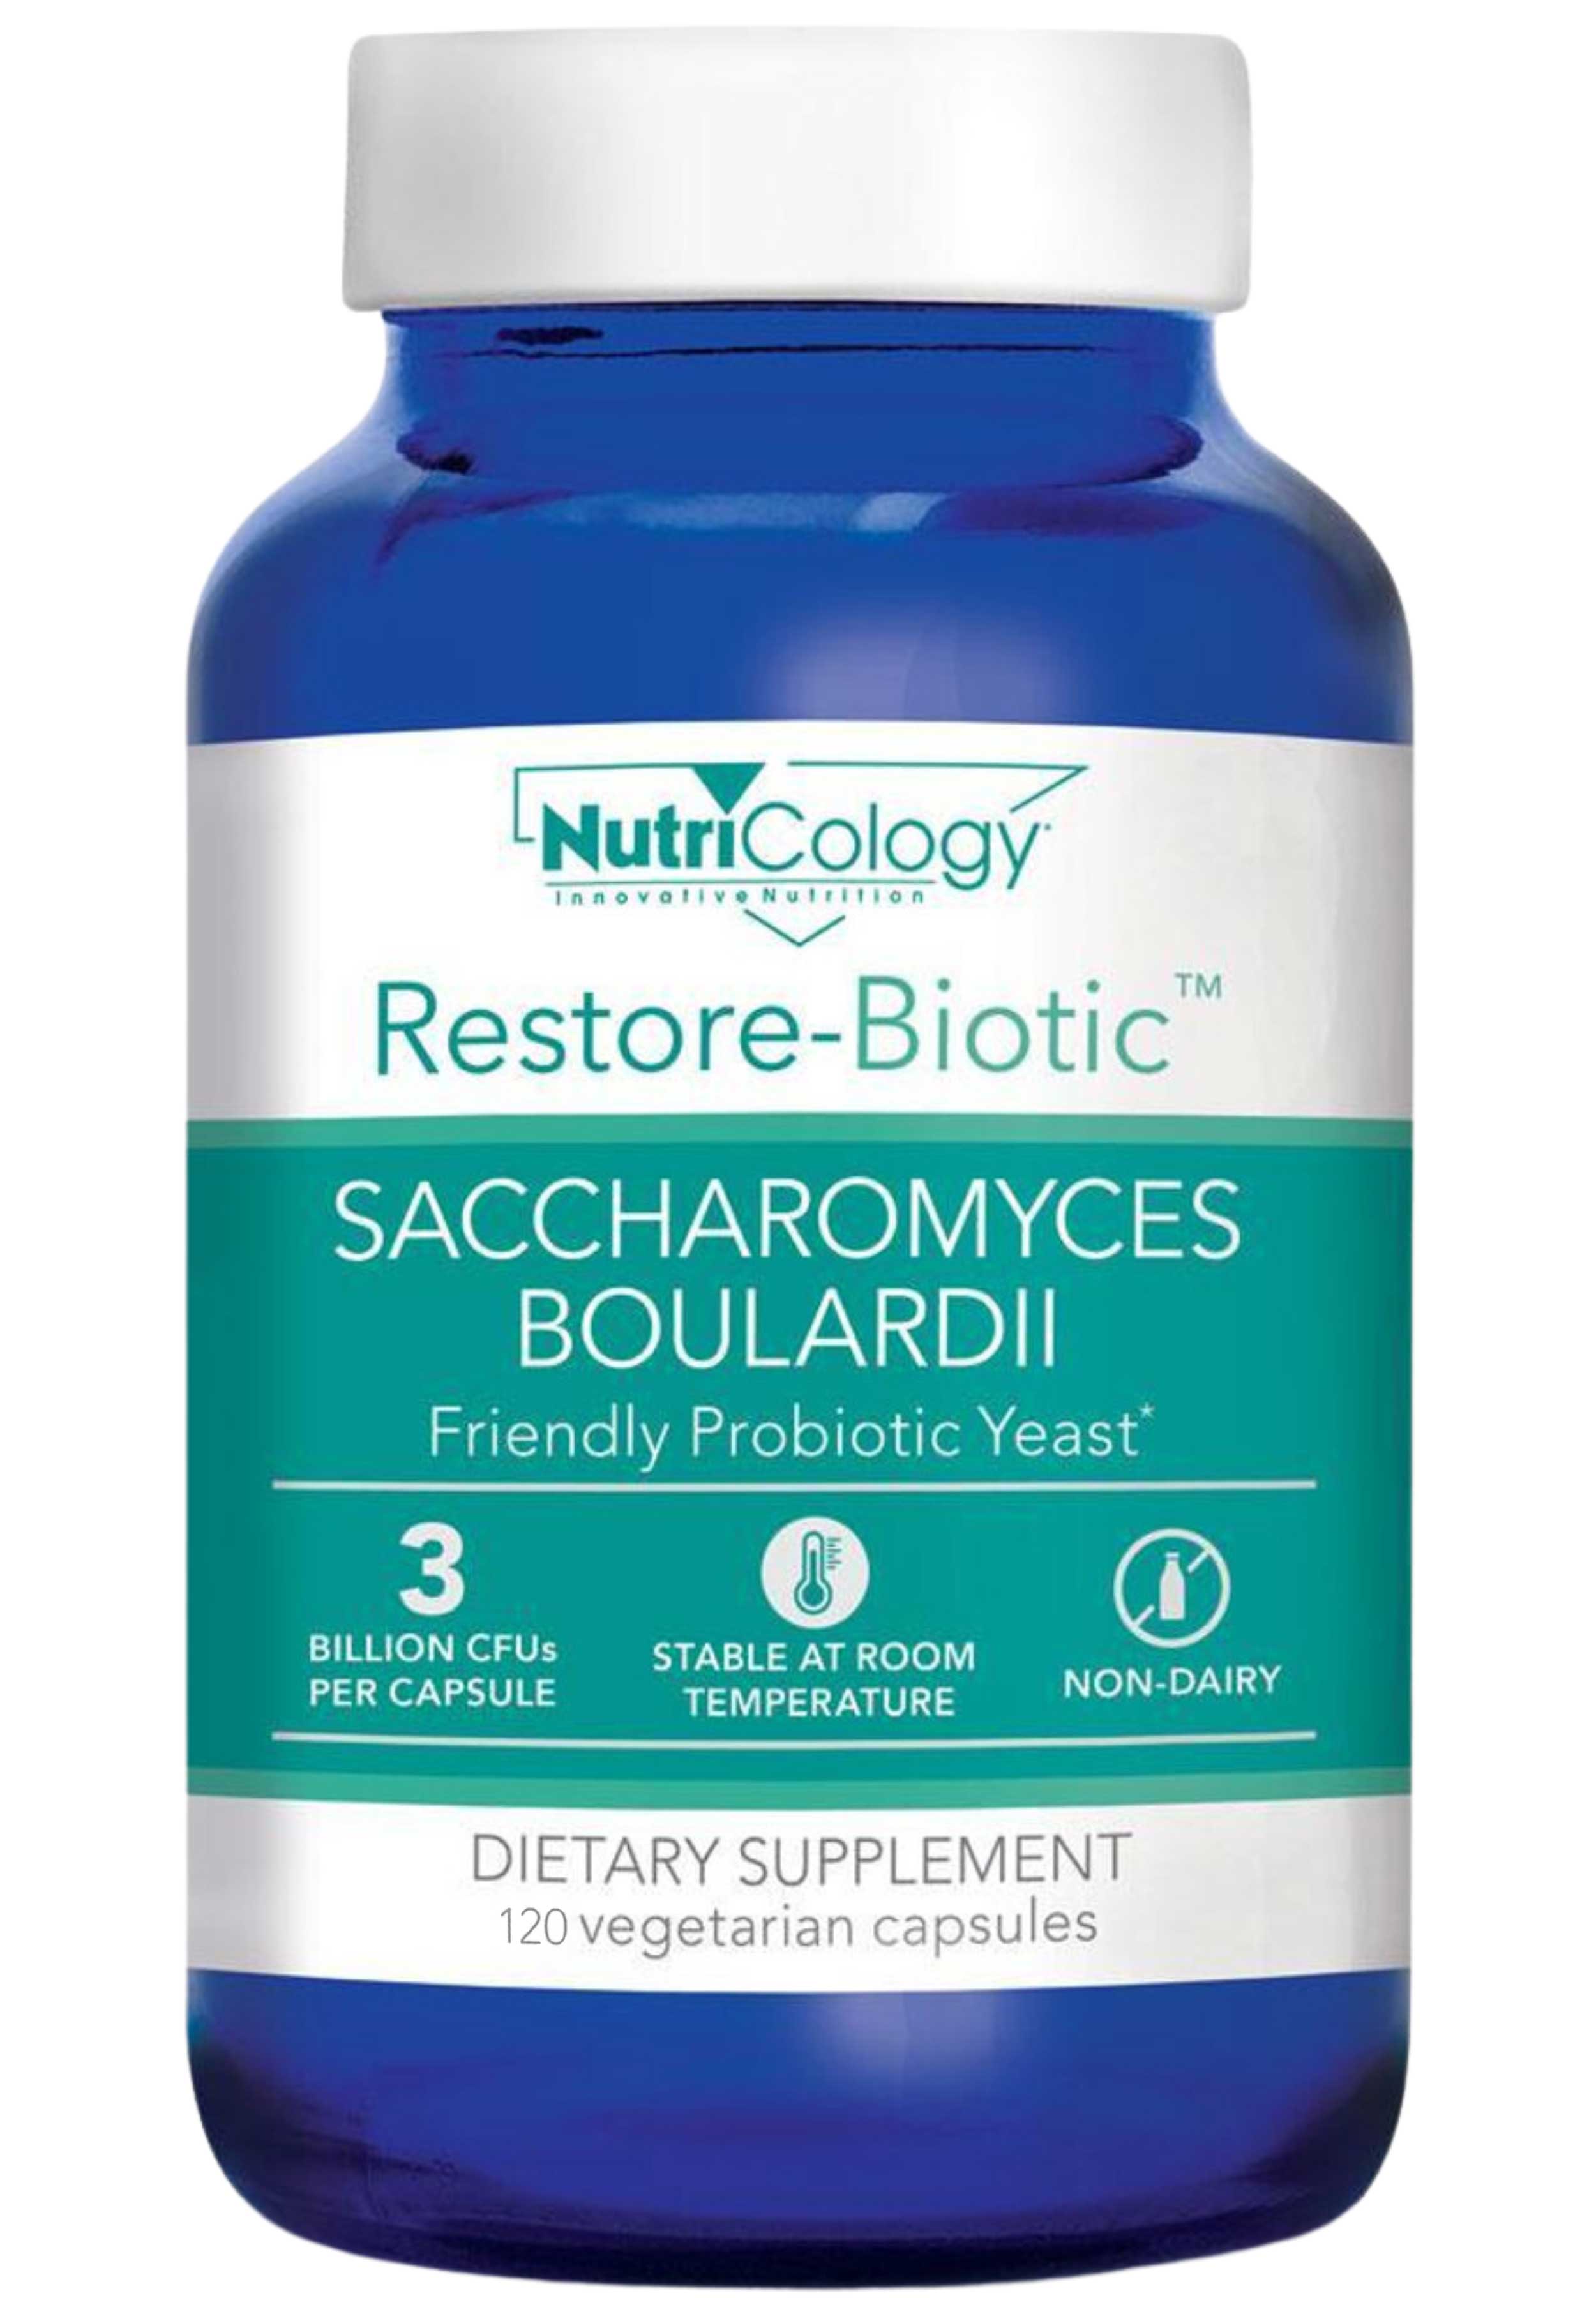 Nutricology Restore-Biotic Saccharomyces Boulardii